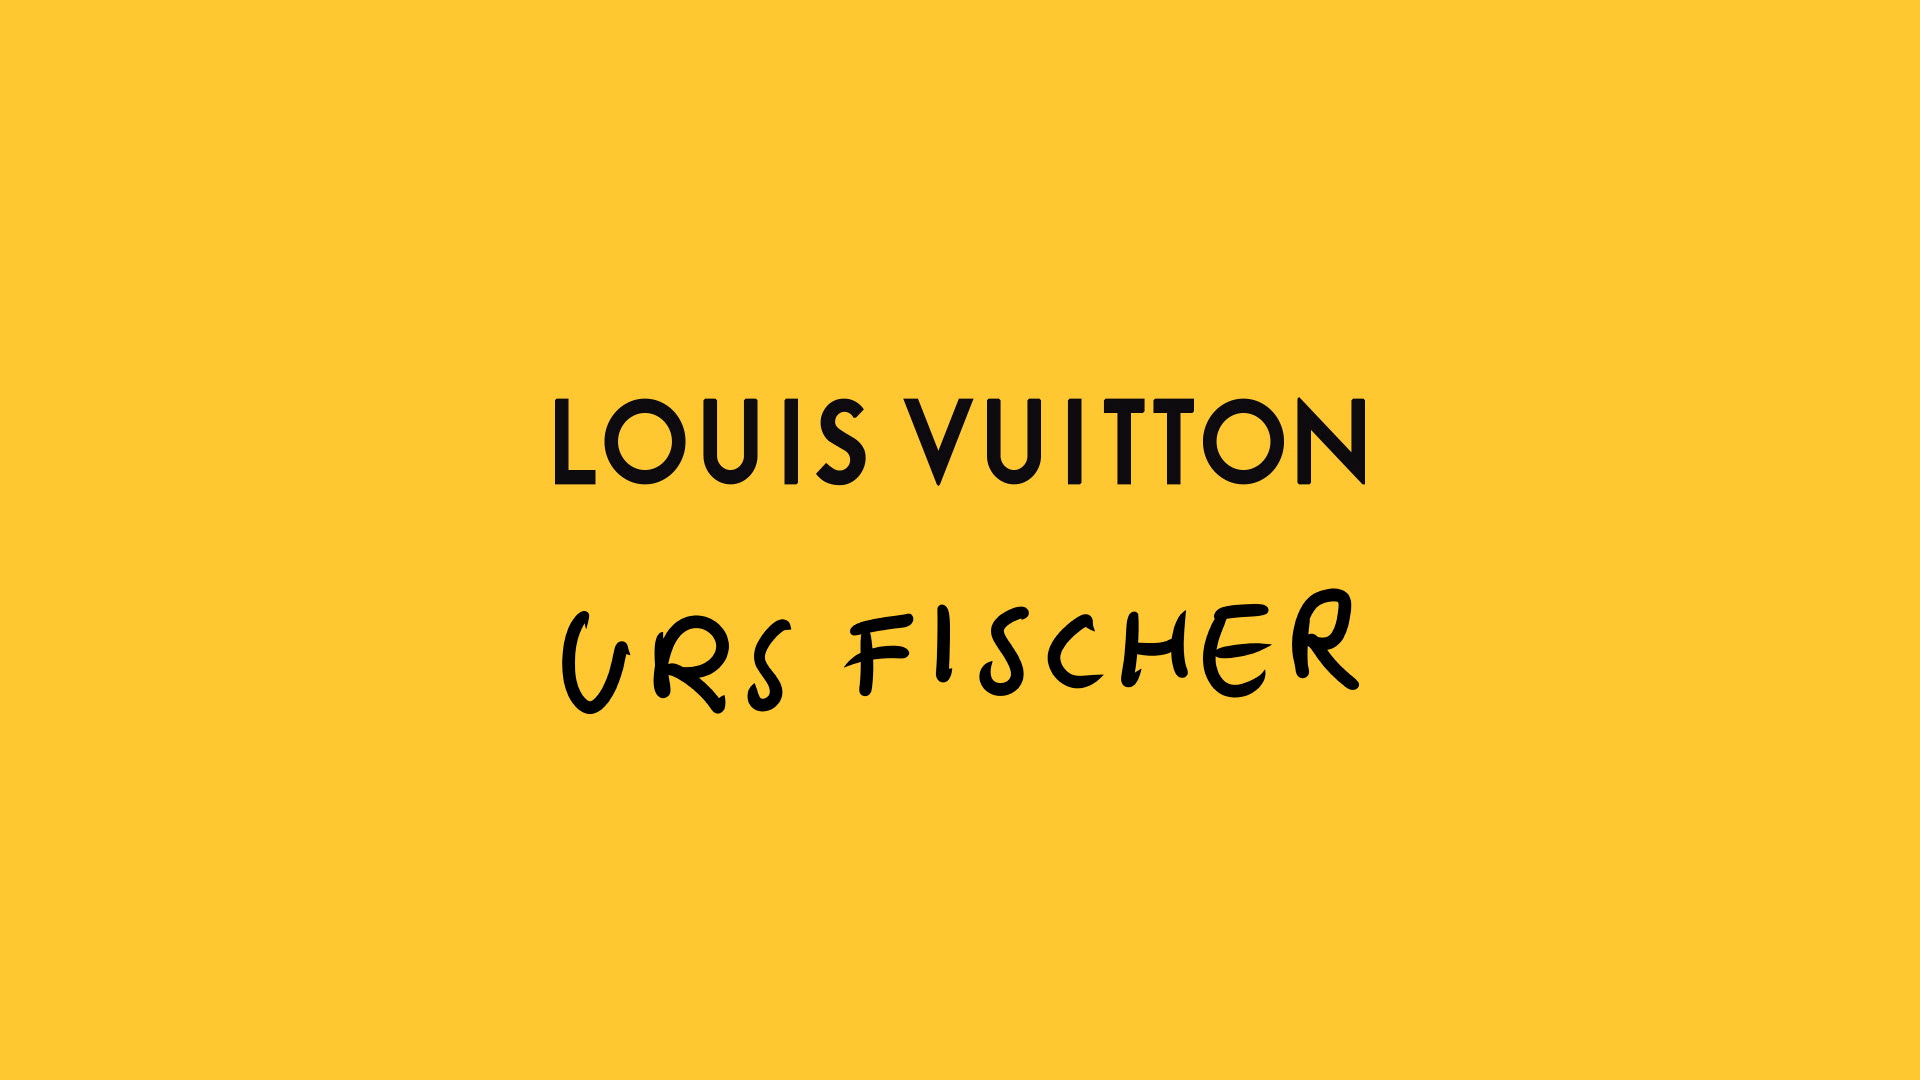 Louis Vuitton x Urs Fischer (Louis Vuitton)